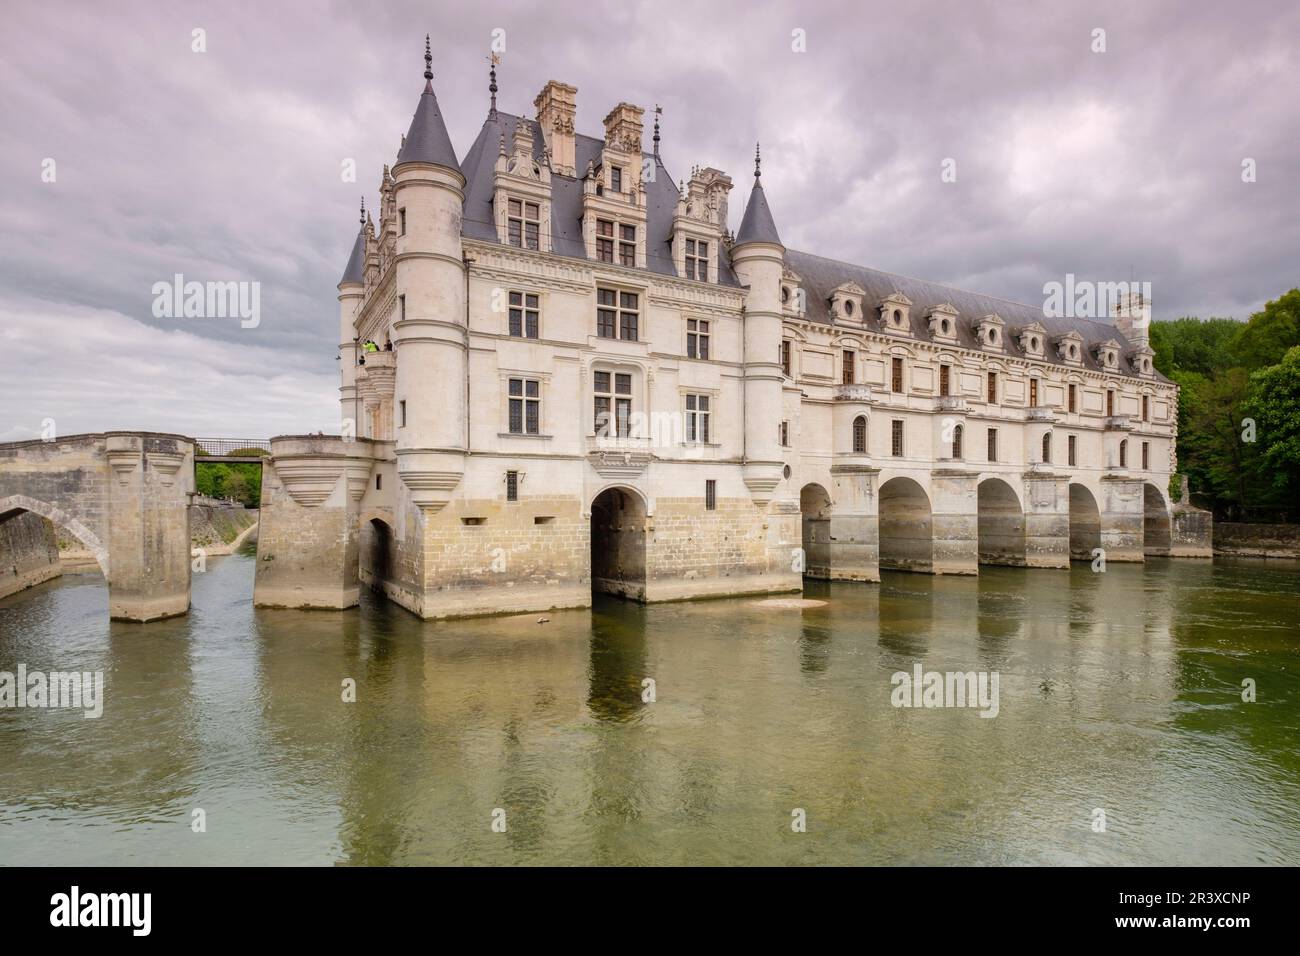 arcadas del Puente de Diana, castillo de Chenonceau, siglo XVI, Chenonceaux, departamento de Indre y Loira,France,Western Europe. Stock Photo